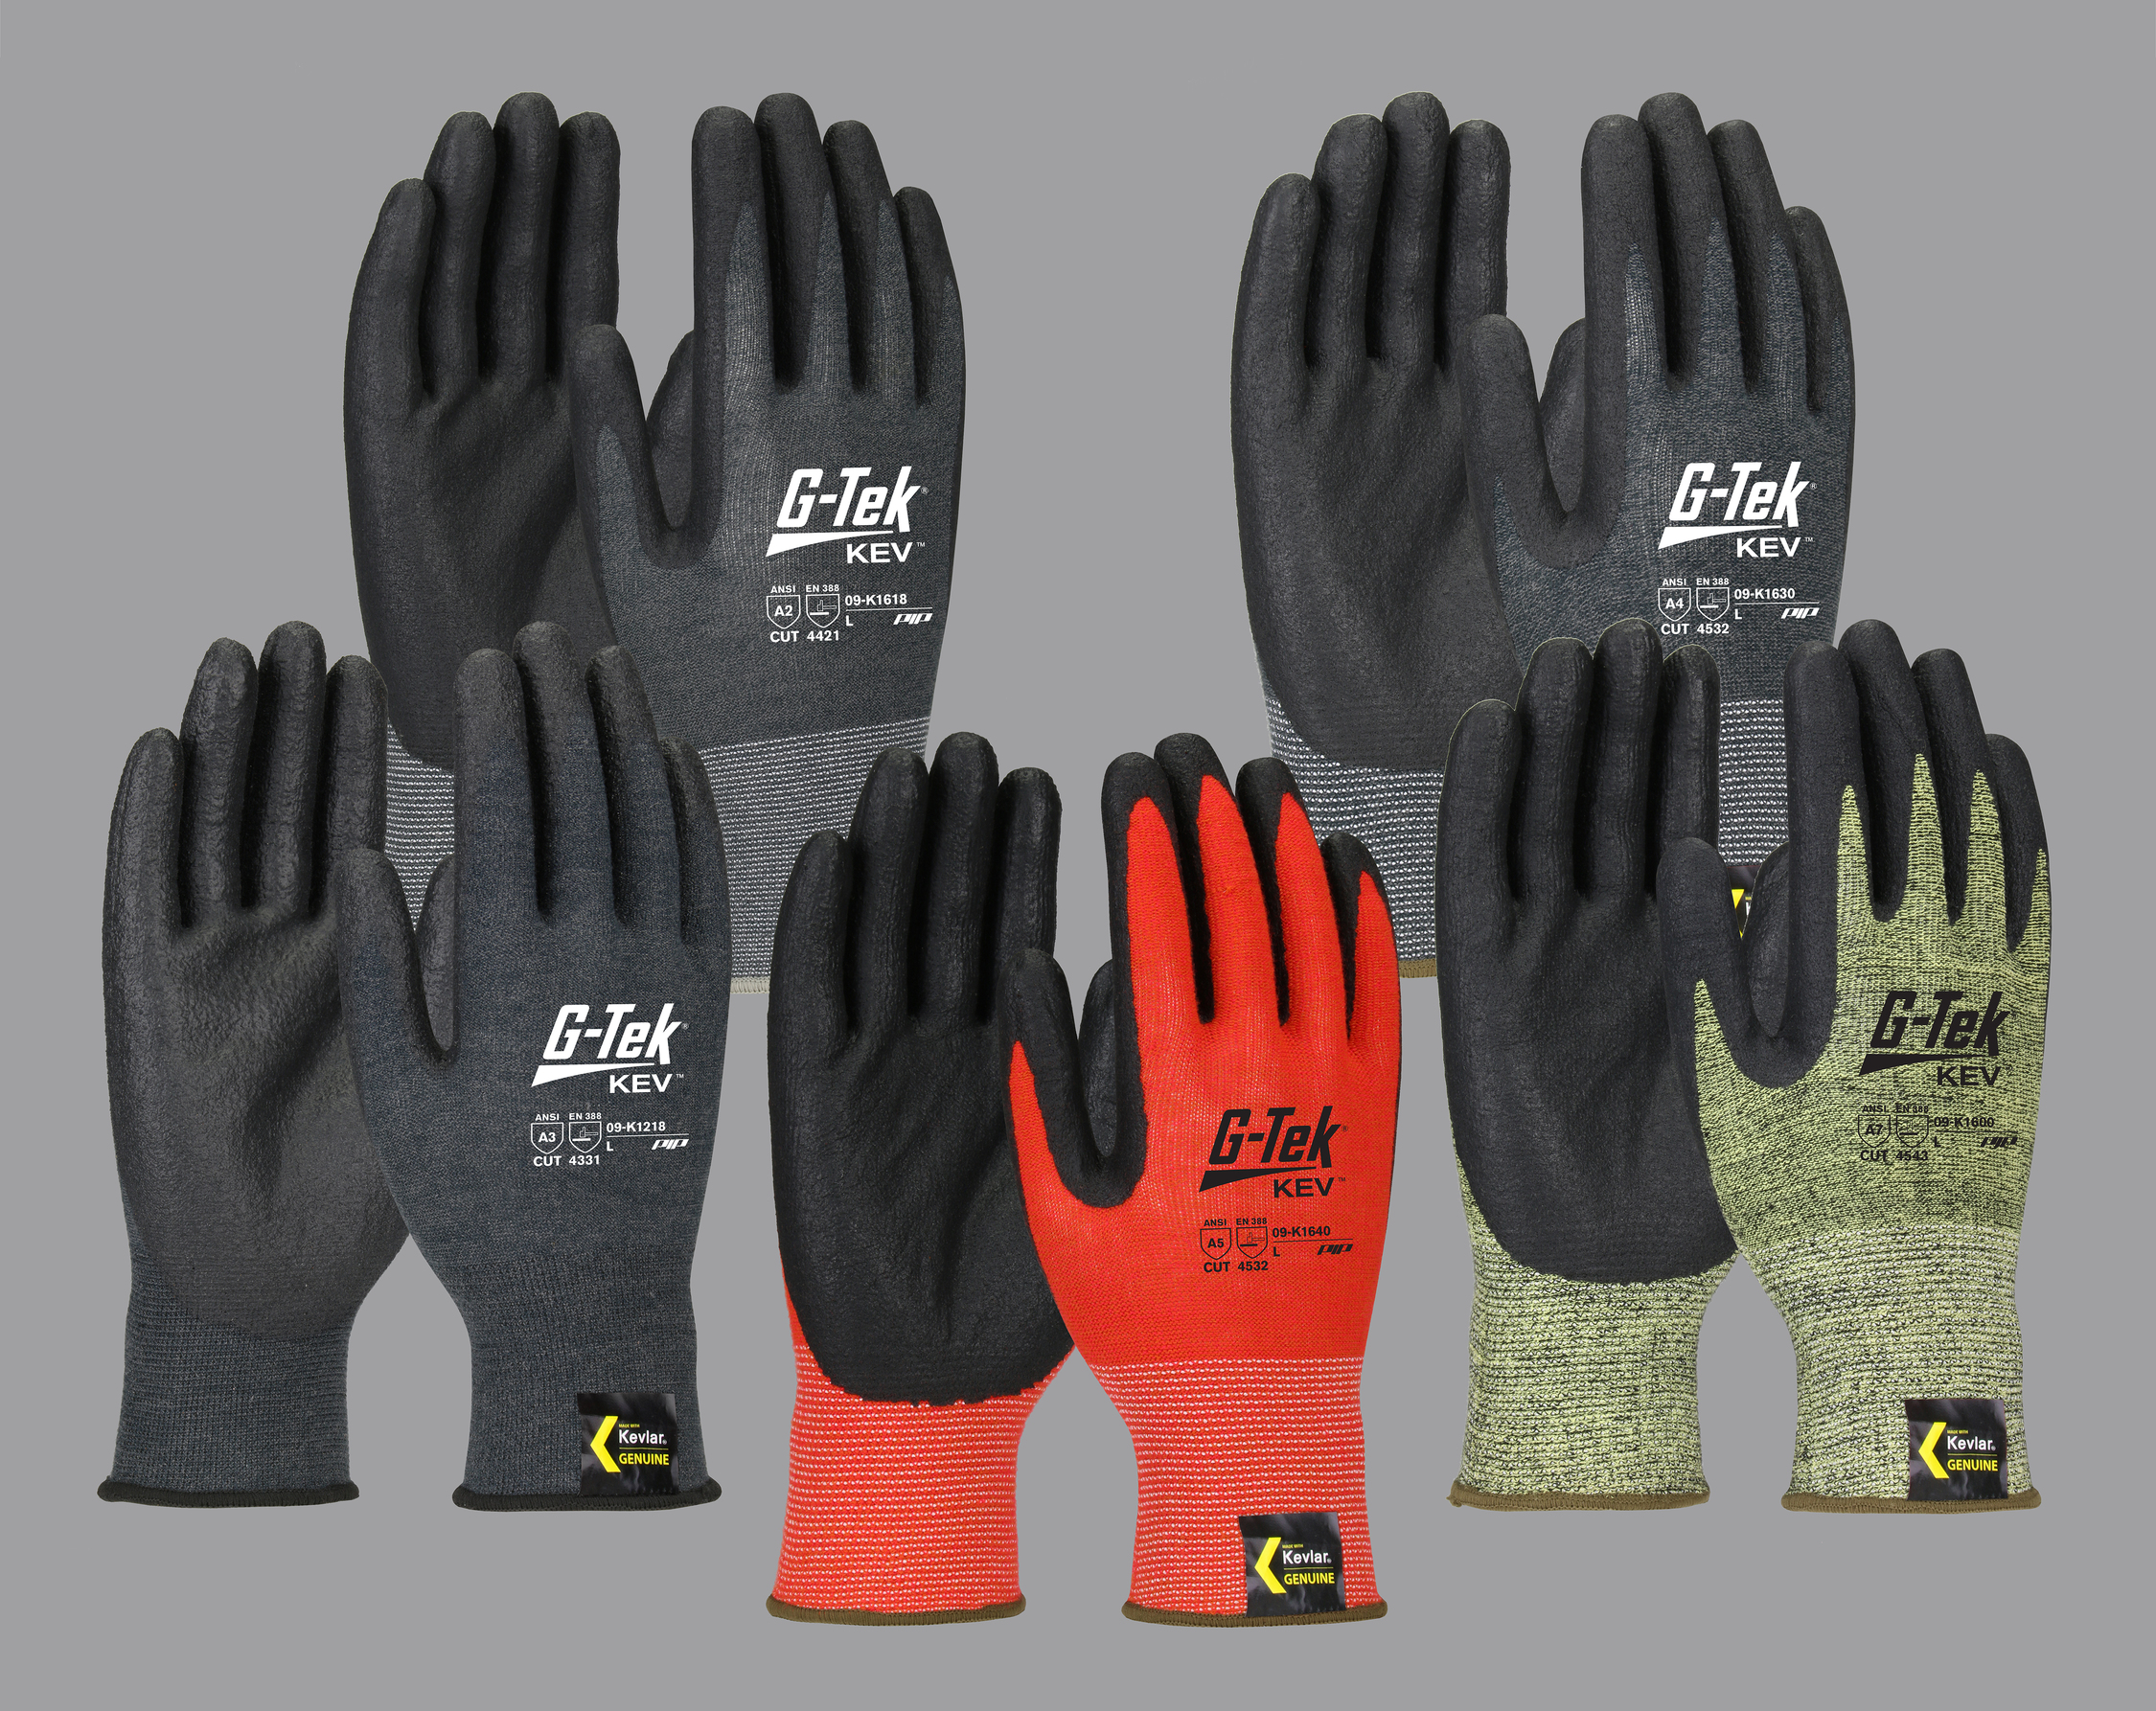 The G-Tek® brand of industrial work gloves fro PIP